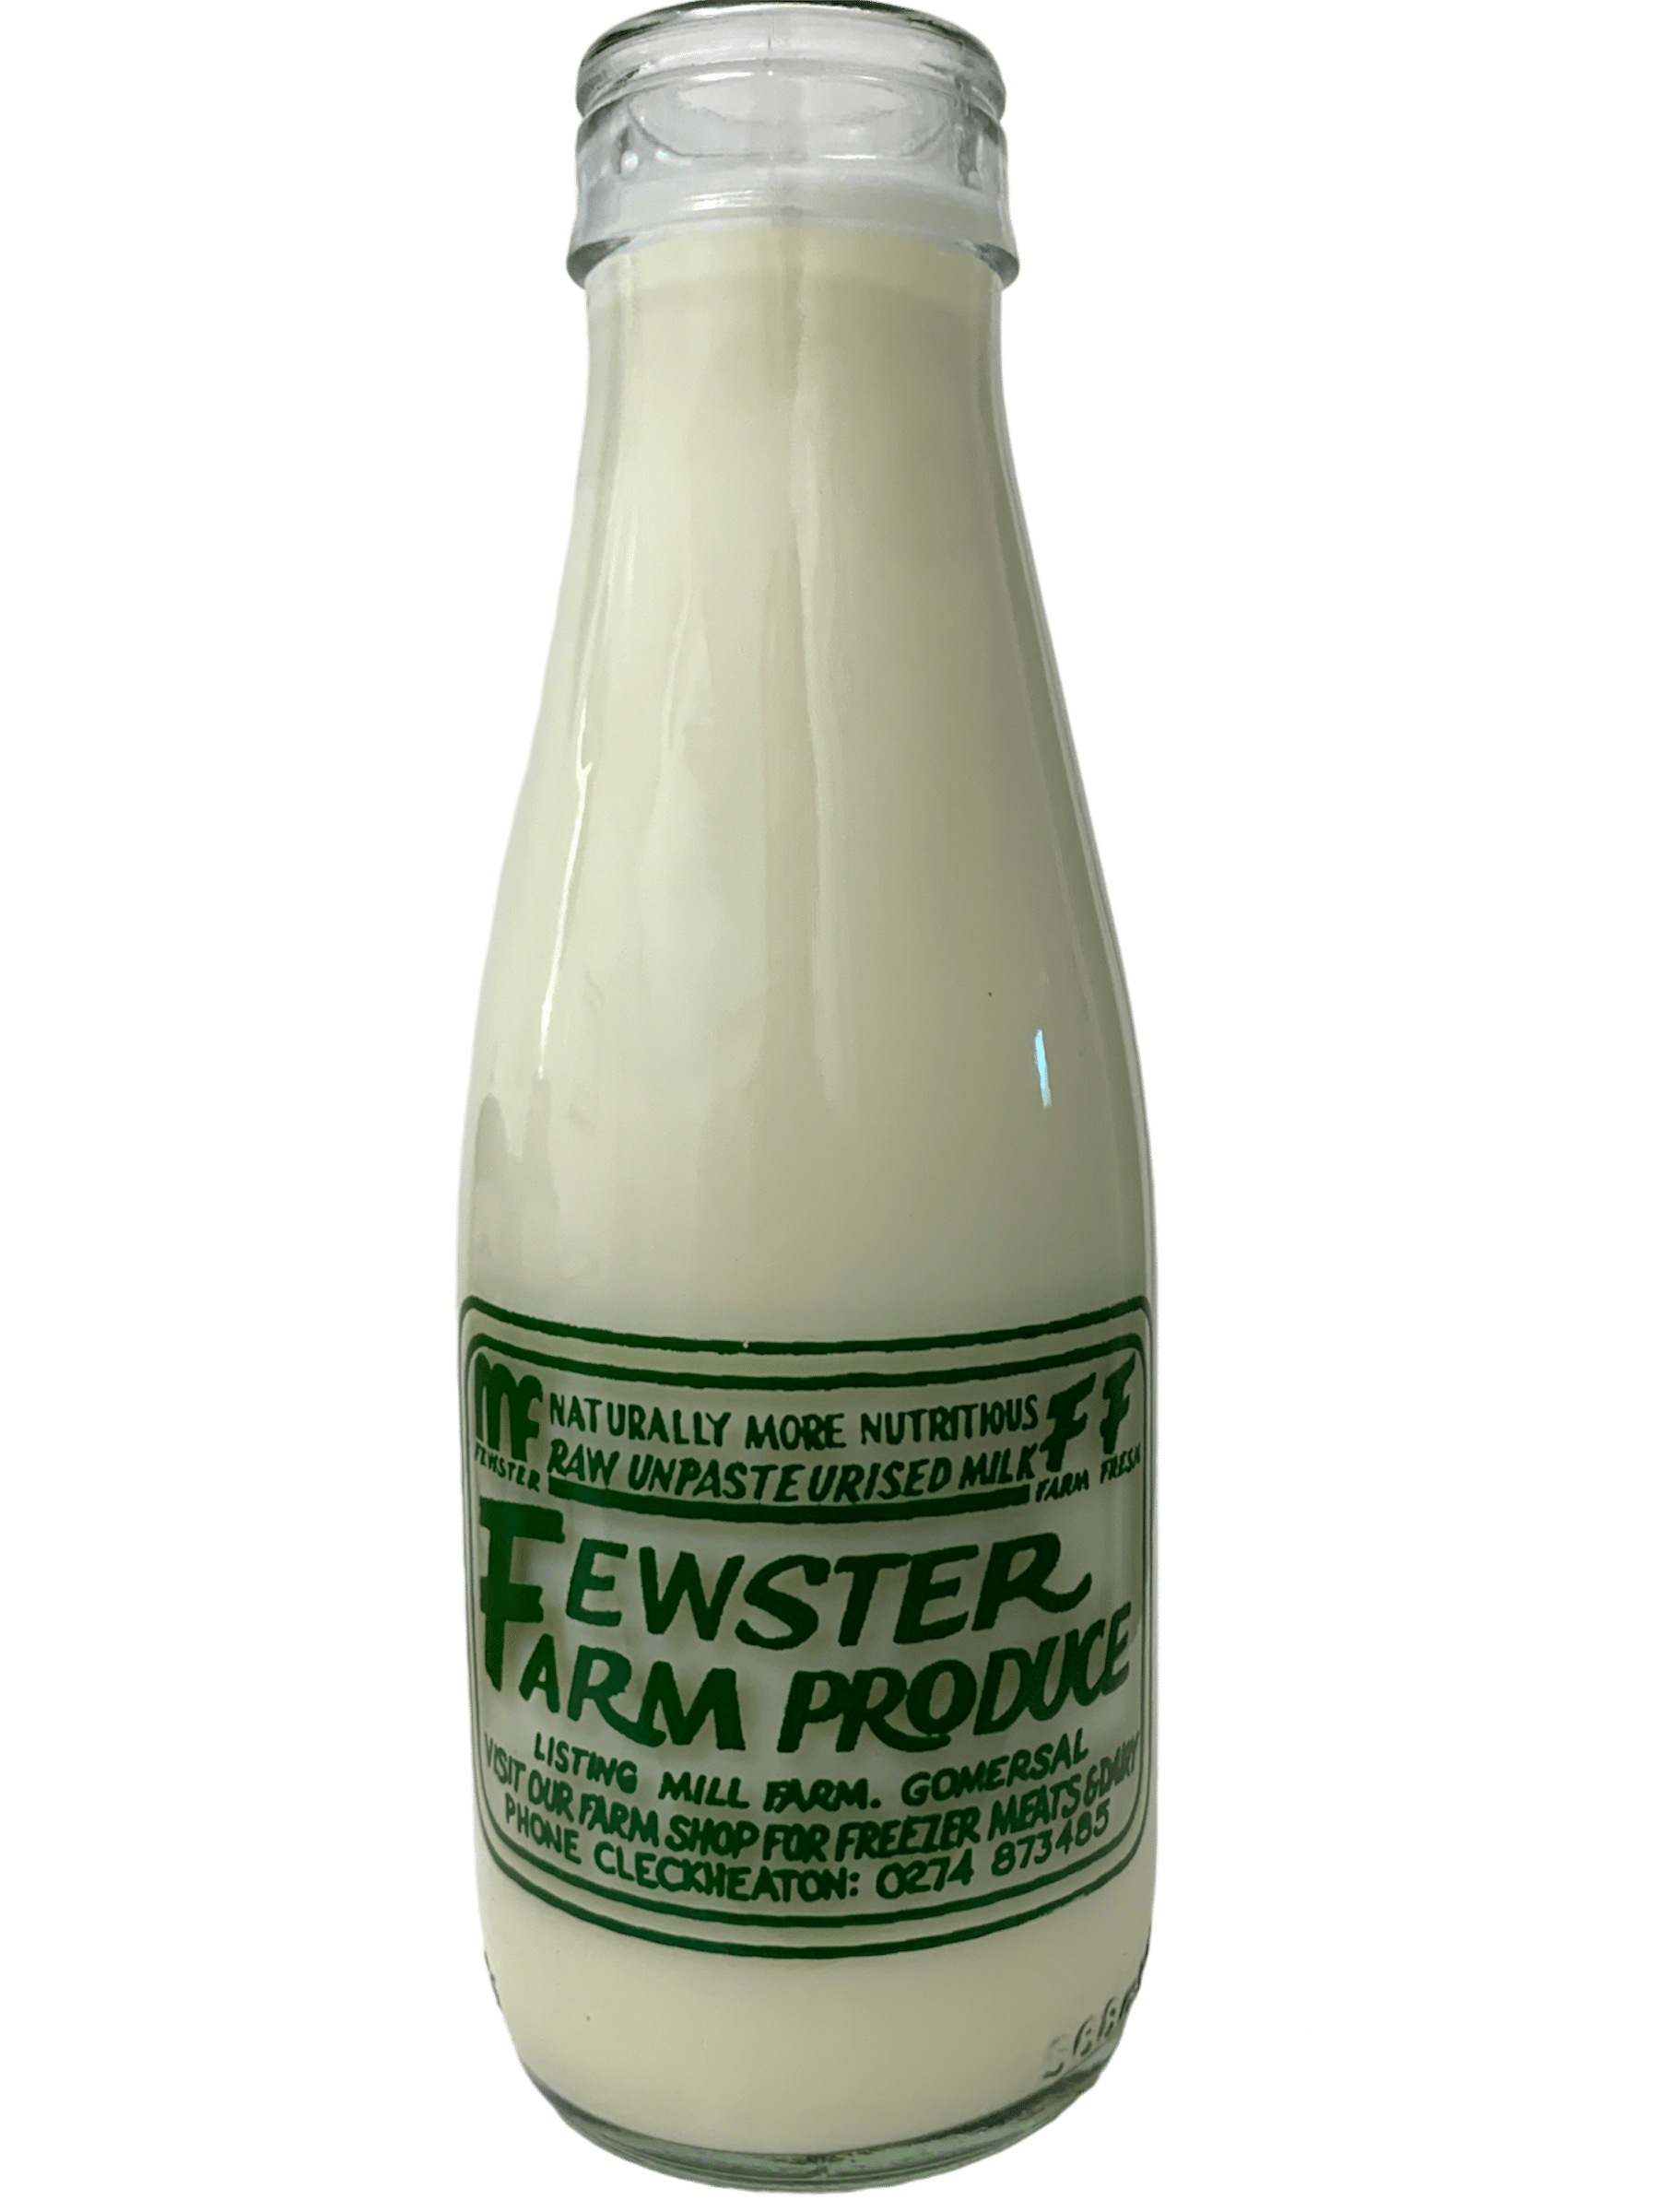 Fewster Farm Produce - www.Kelis.info #KelisTheBottleBank